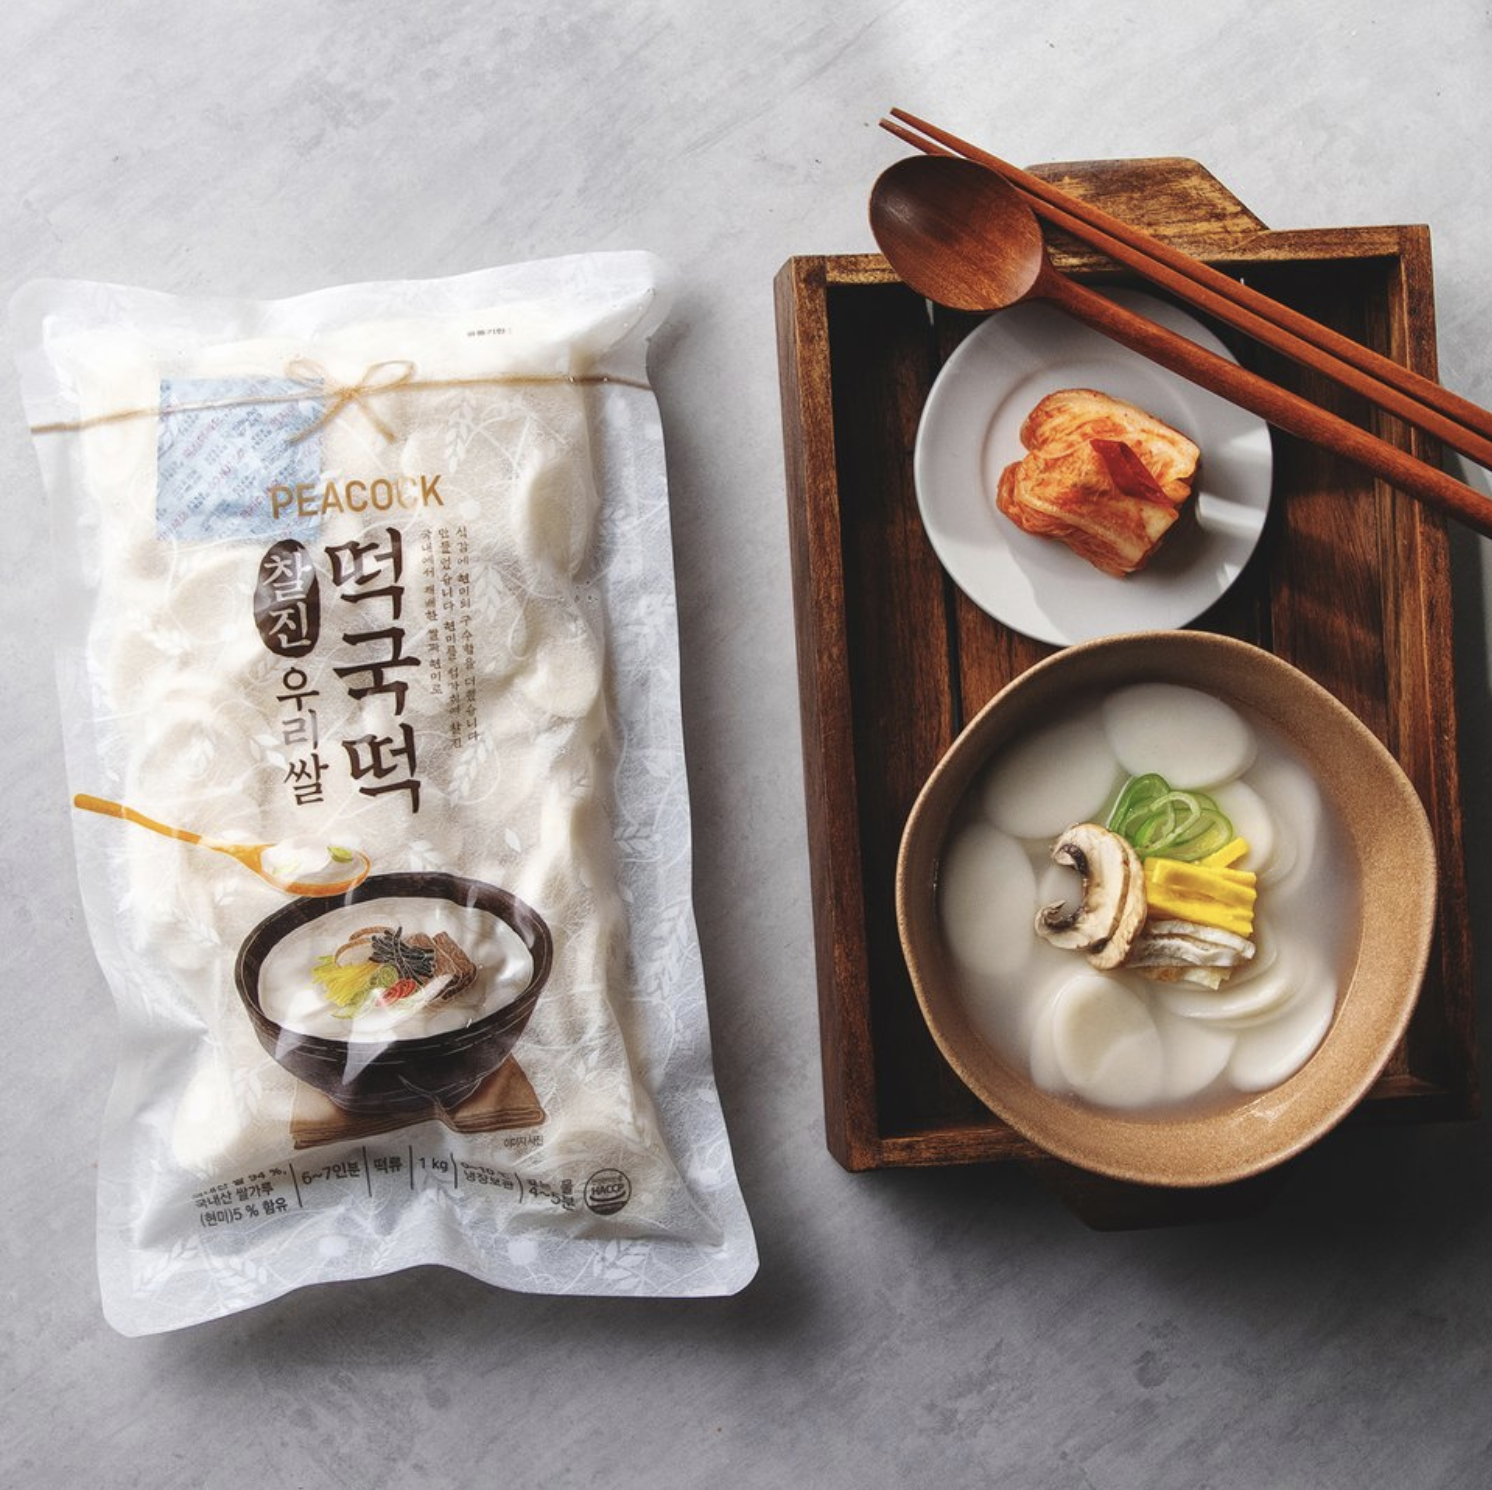 韓國食品-[Peacock] 高級韓國米製湯用年糕 1kg